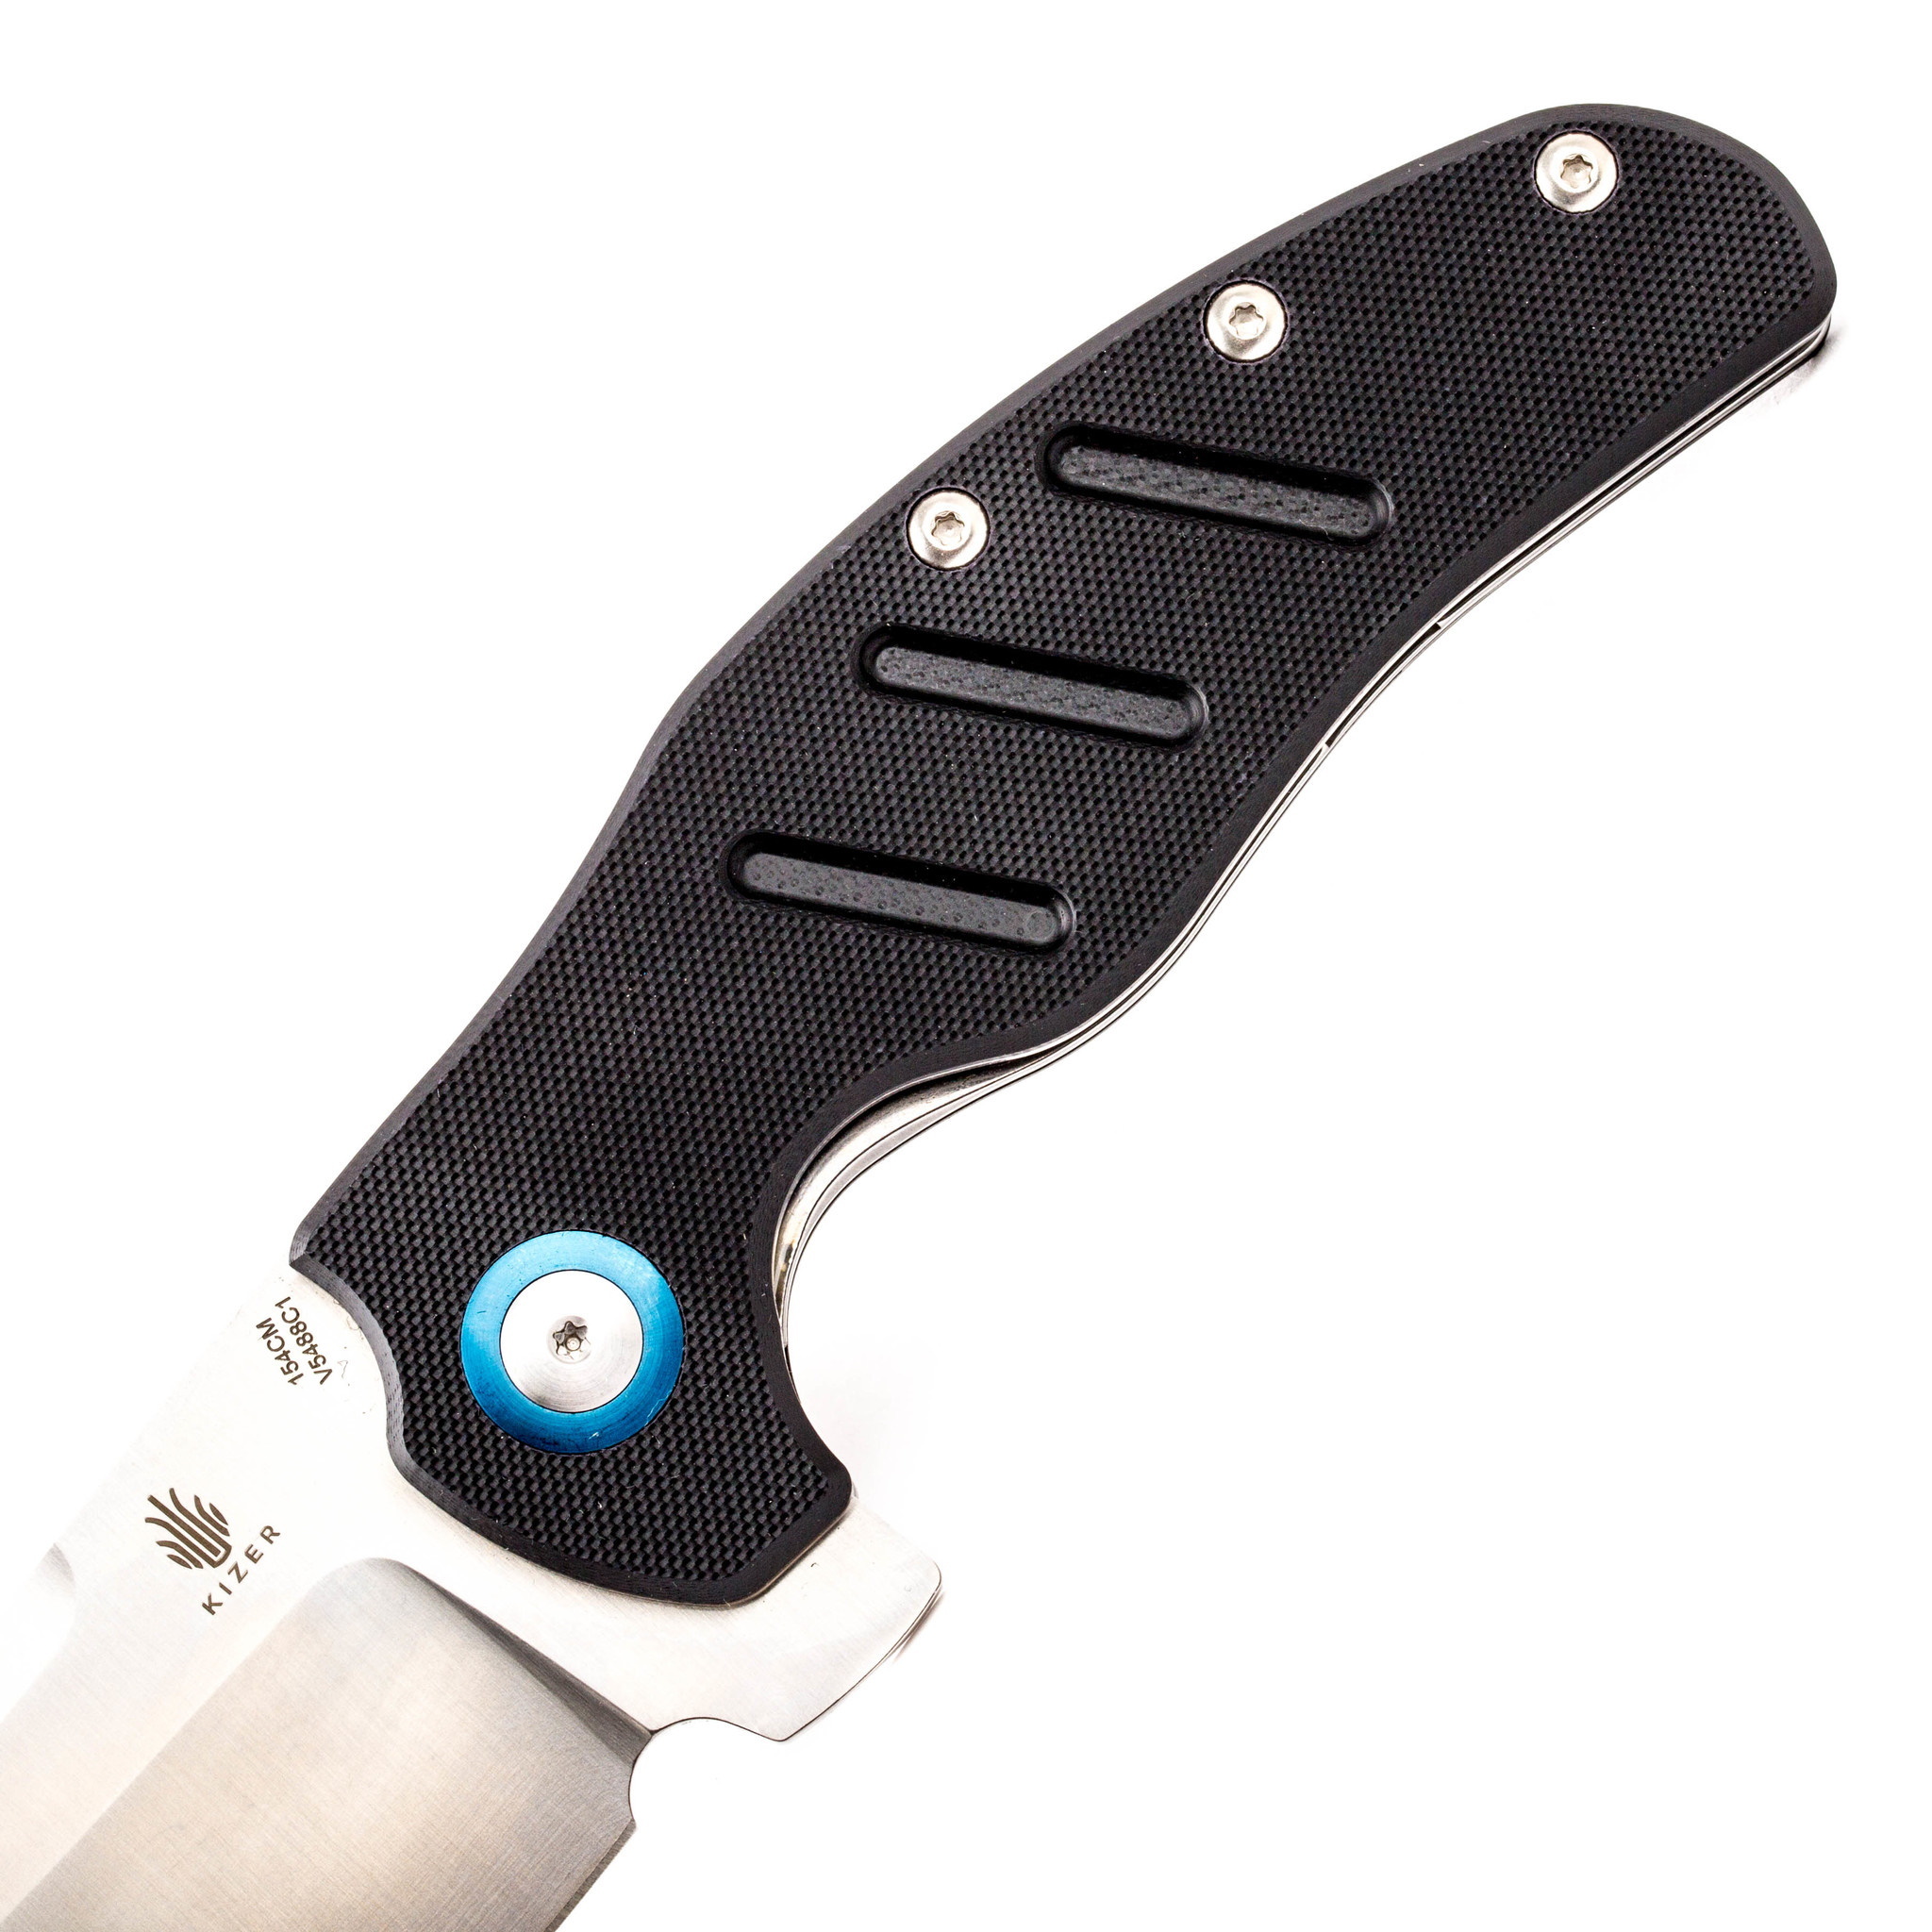 Складной нож Kizer C01C XL, сталь 154CM, рукоять черная G10 - фото 3